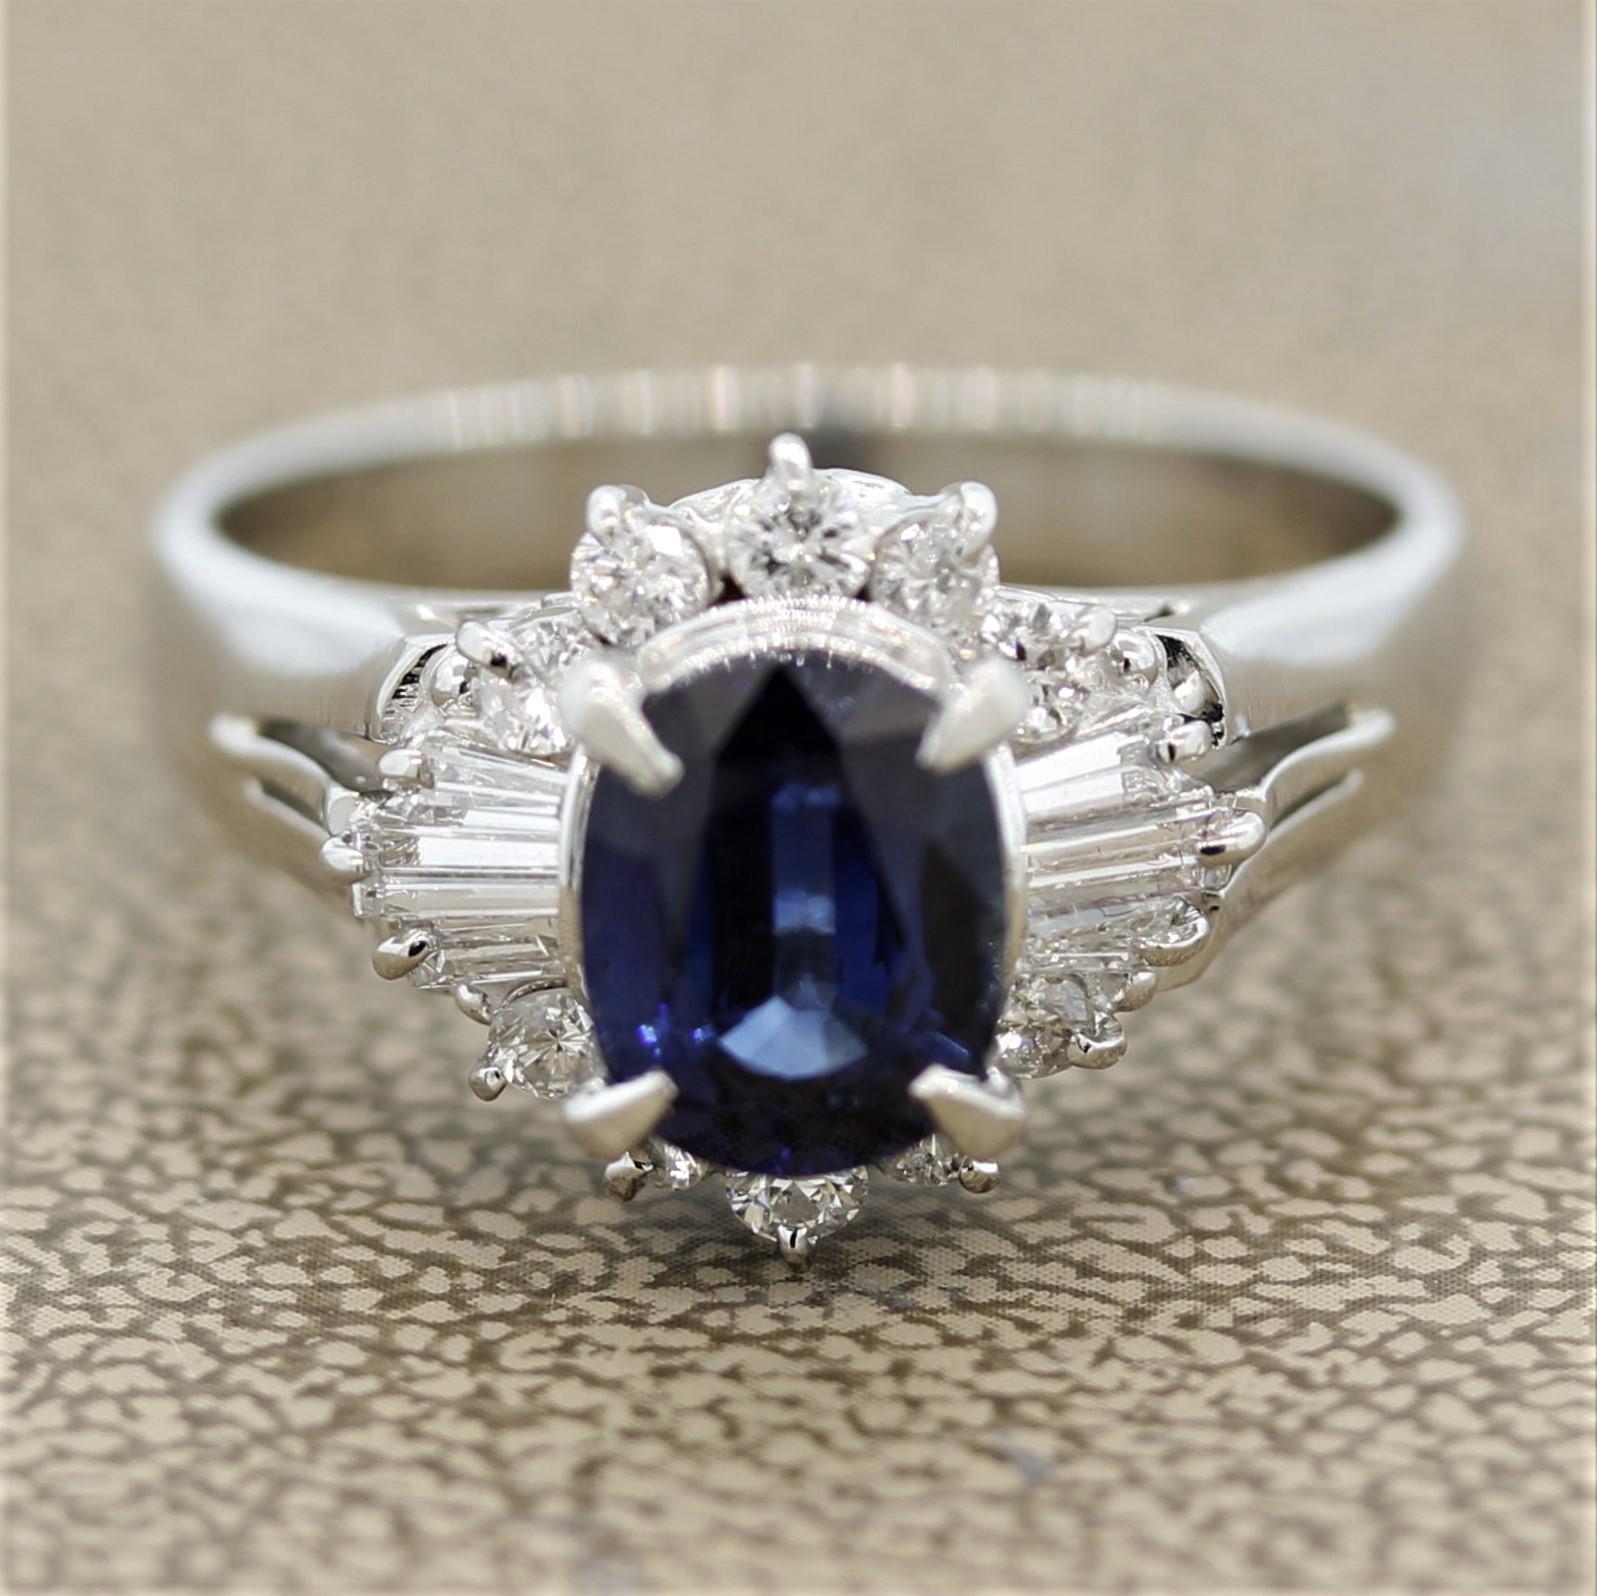 Une belle bague avec un saphir de forme ovale de 2,07 carats. Elle présente une couleur bleue douce et vive, sans inclusions visibles. Il est entouré de 0,61 carats de diamants baguette et ronds de taille brillant, sertis autour du saphir selon un